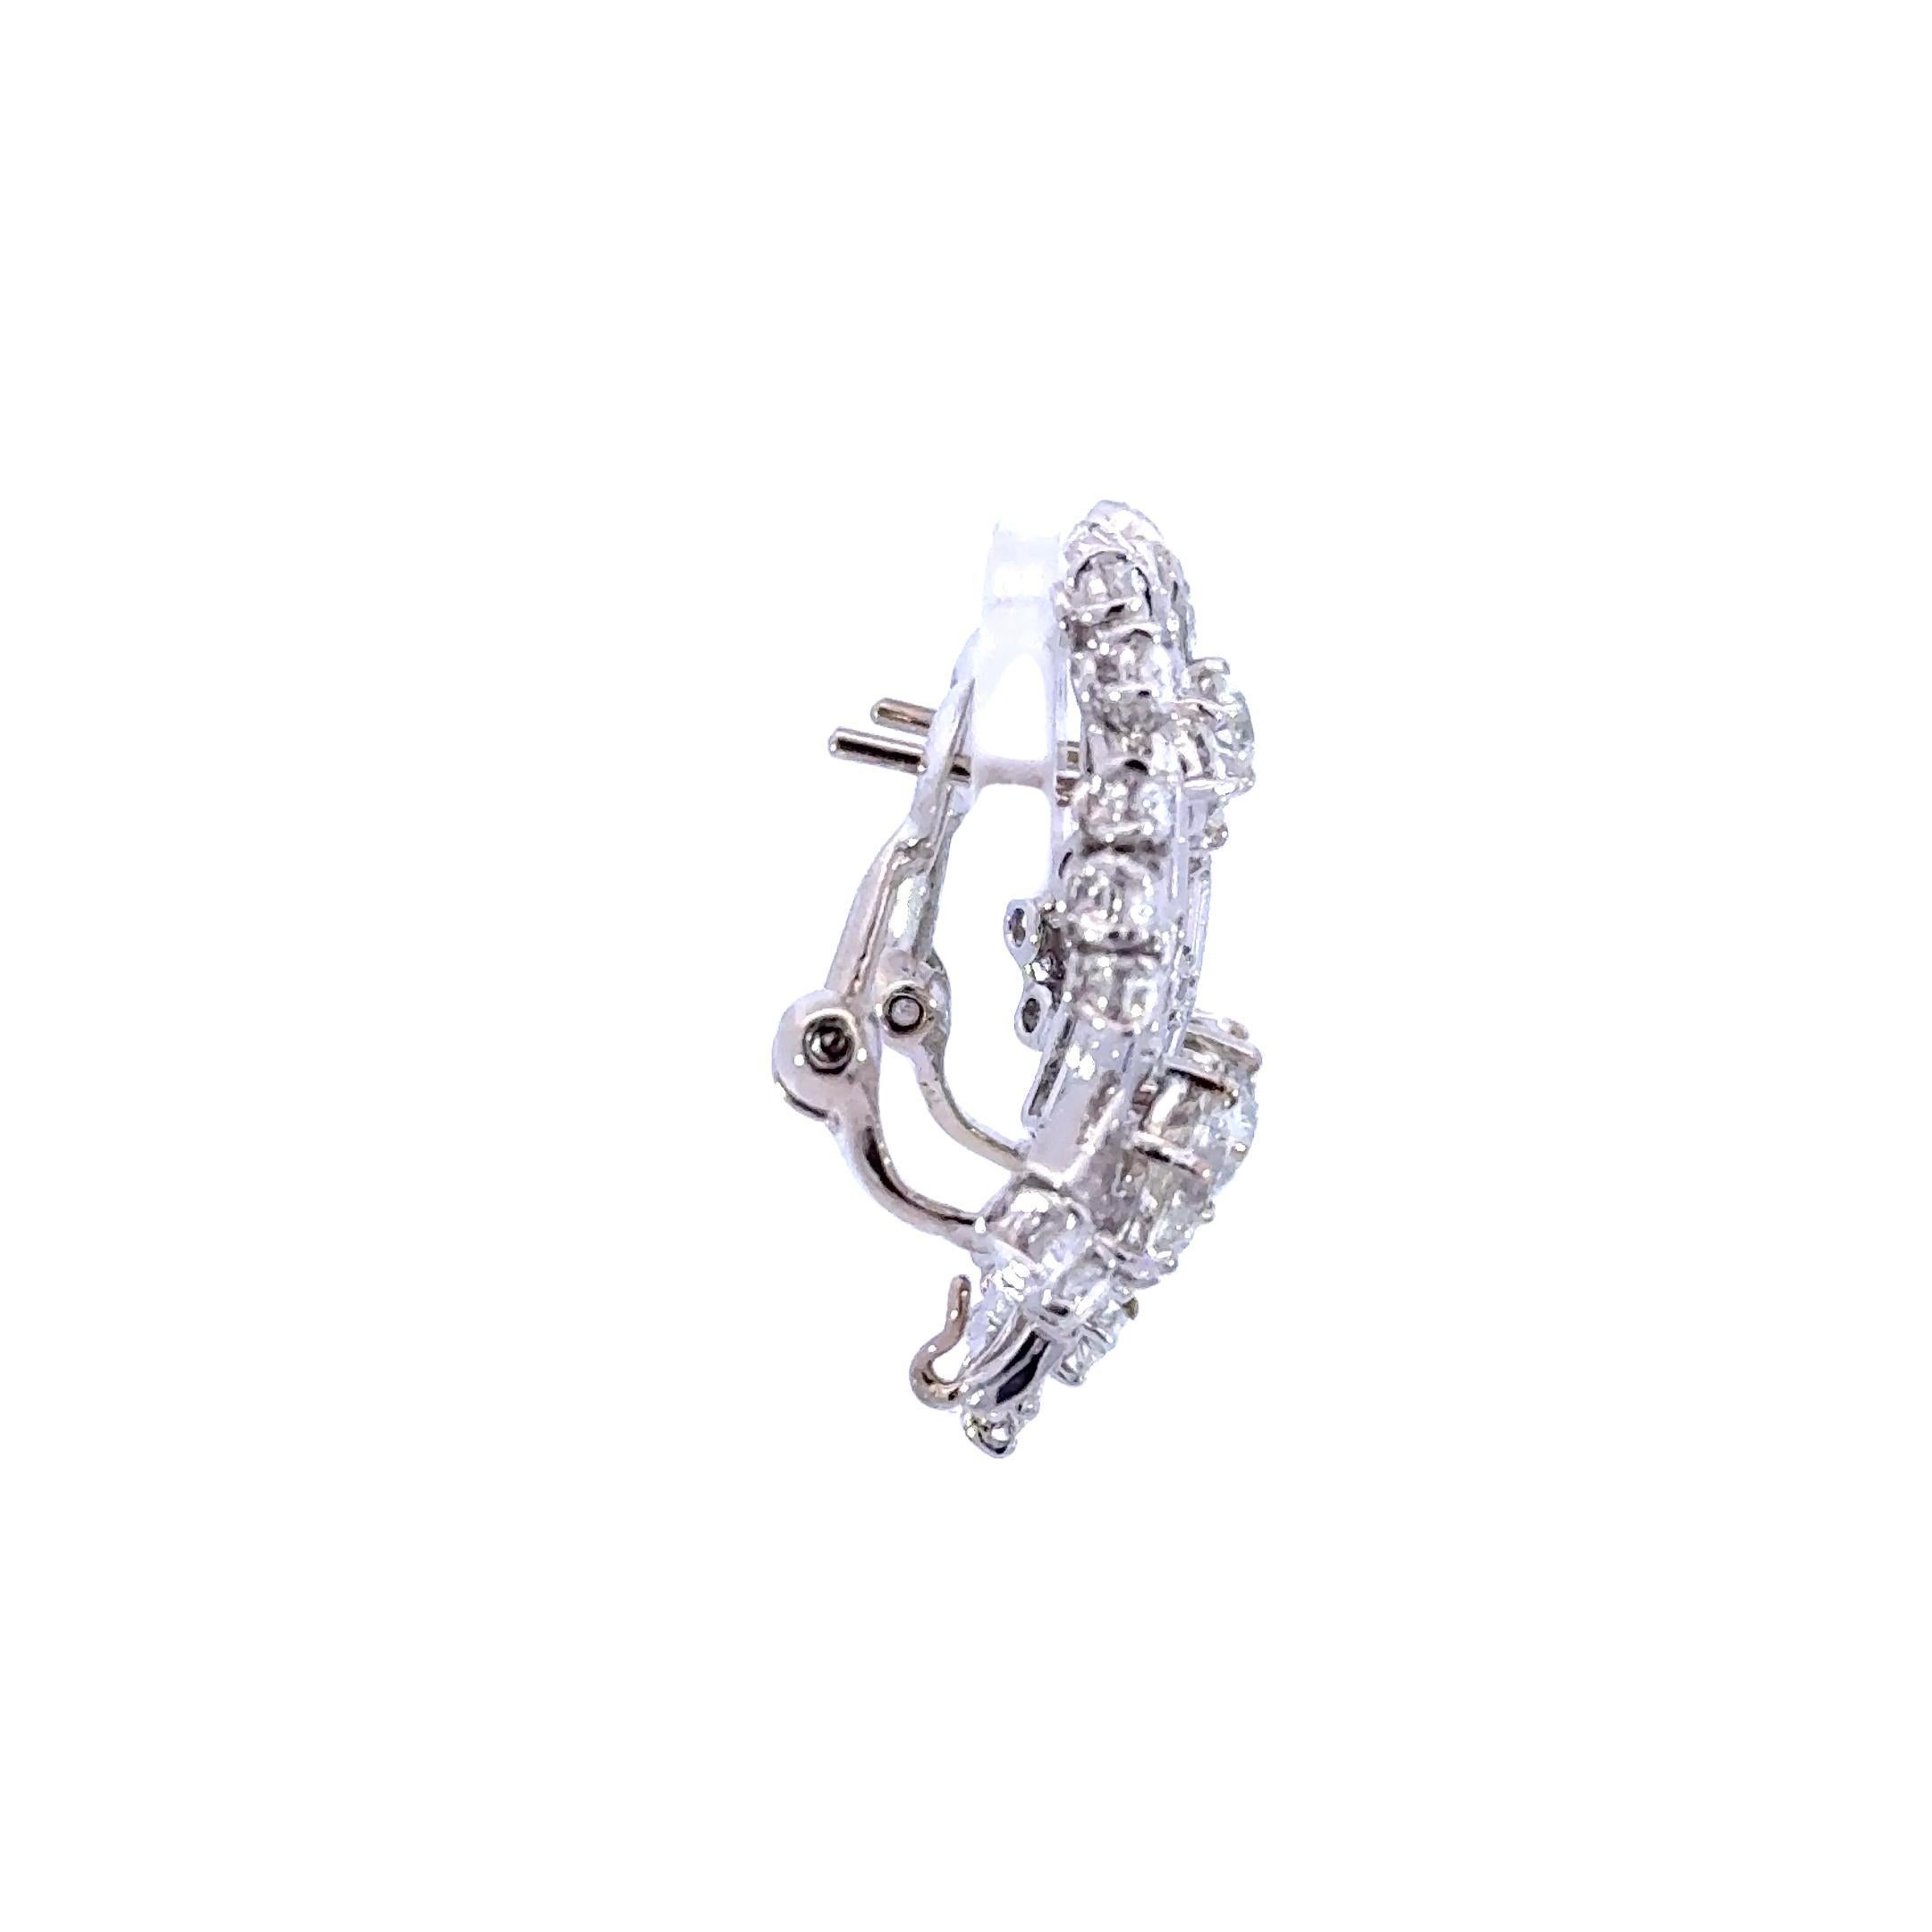 La boucle d'oreille goutte d'eau en diamant taille européenne ancienne de 5,00 carats est un bijou exquis qui respire l'élégance et la sophistication. Fabriquées avec précision et souci du détail, ces boucles d'oreilles pendantes sont ornées d'un